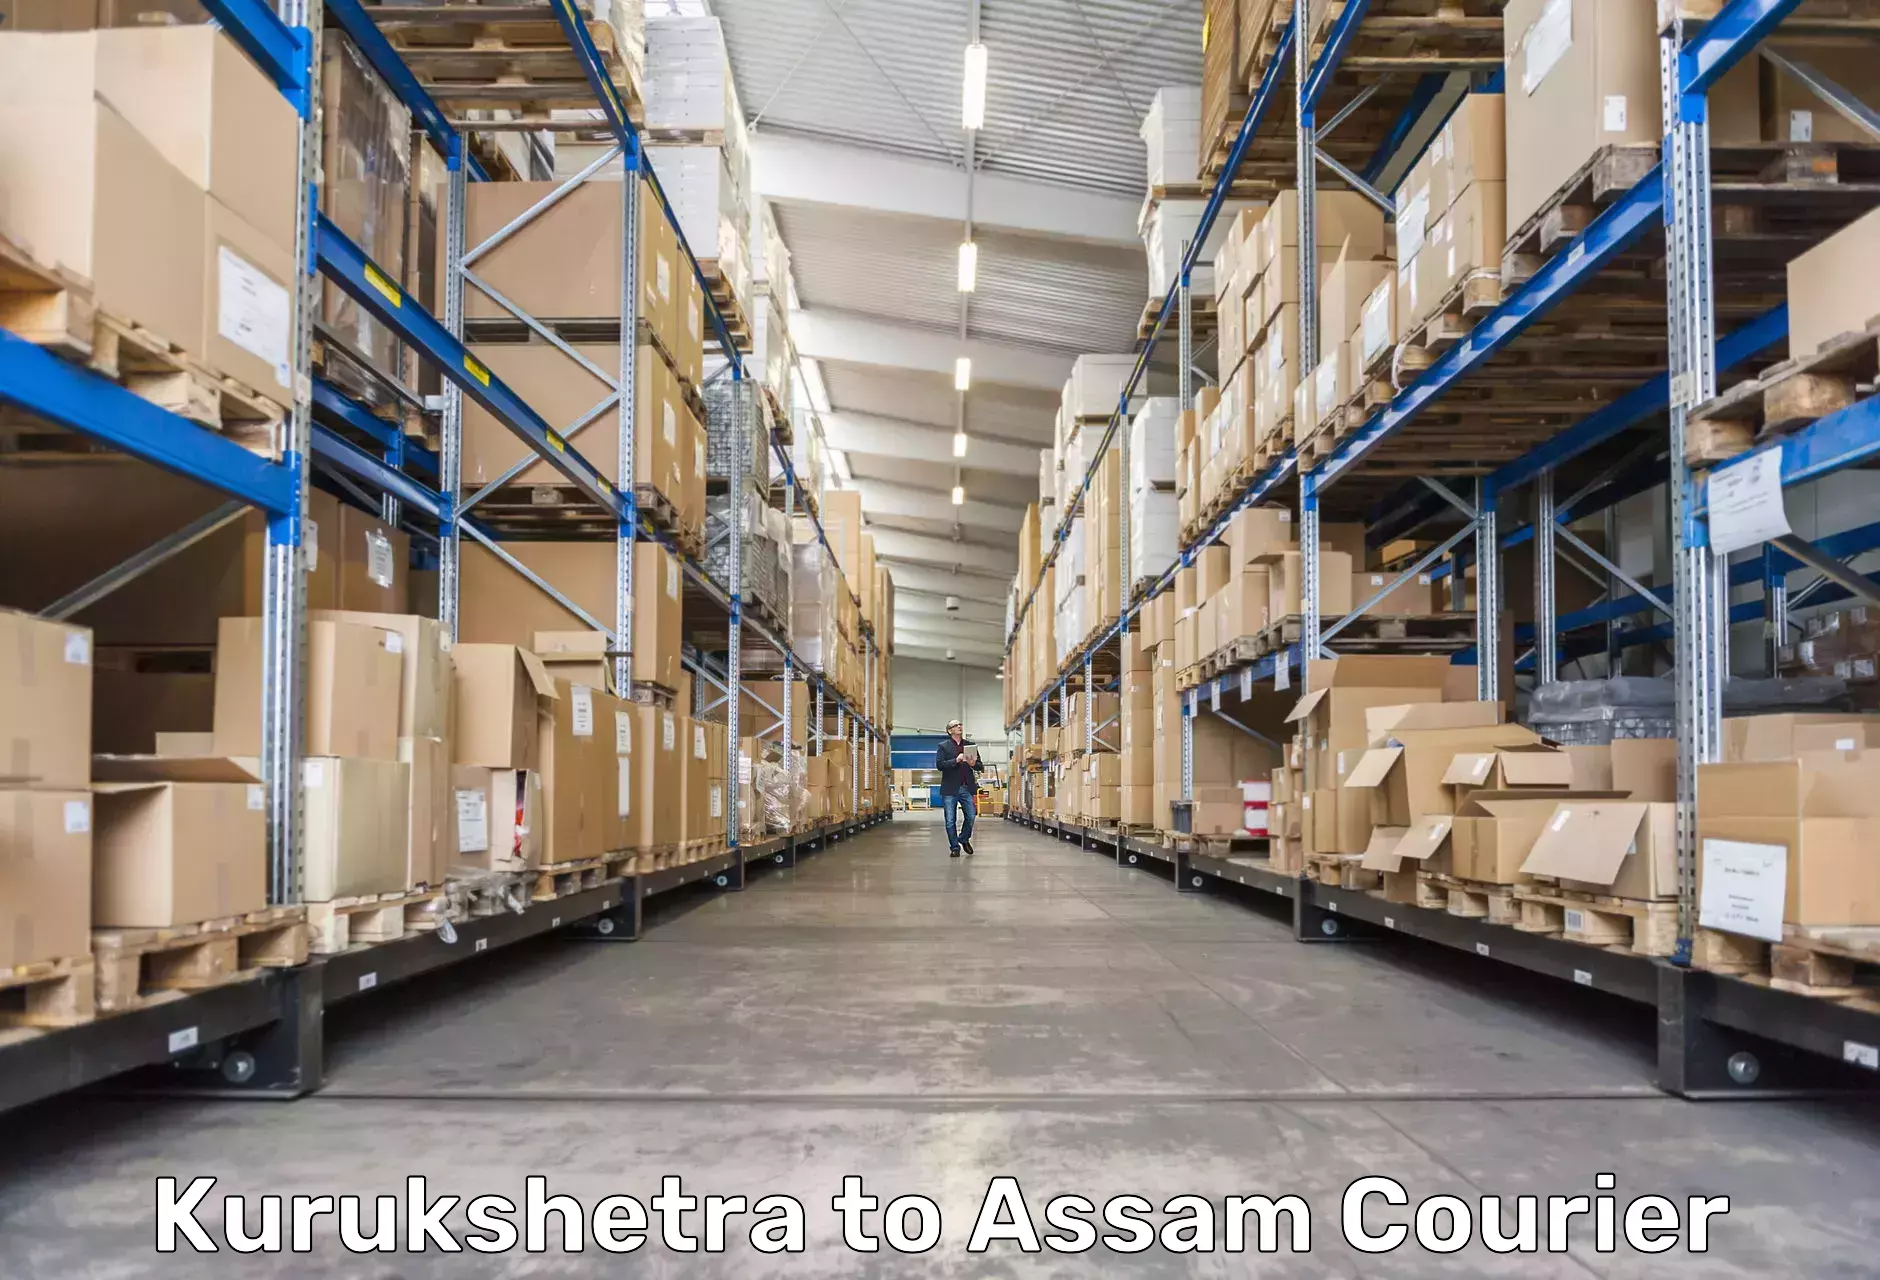 Reliable courier services Kurukshetra to Tinsukia